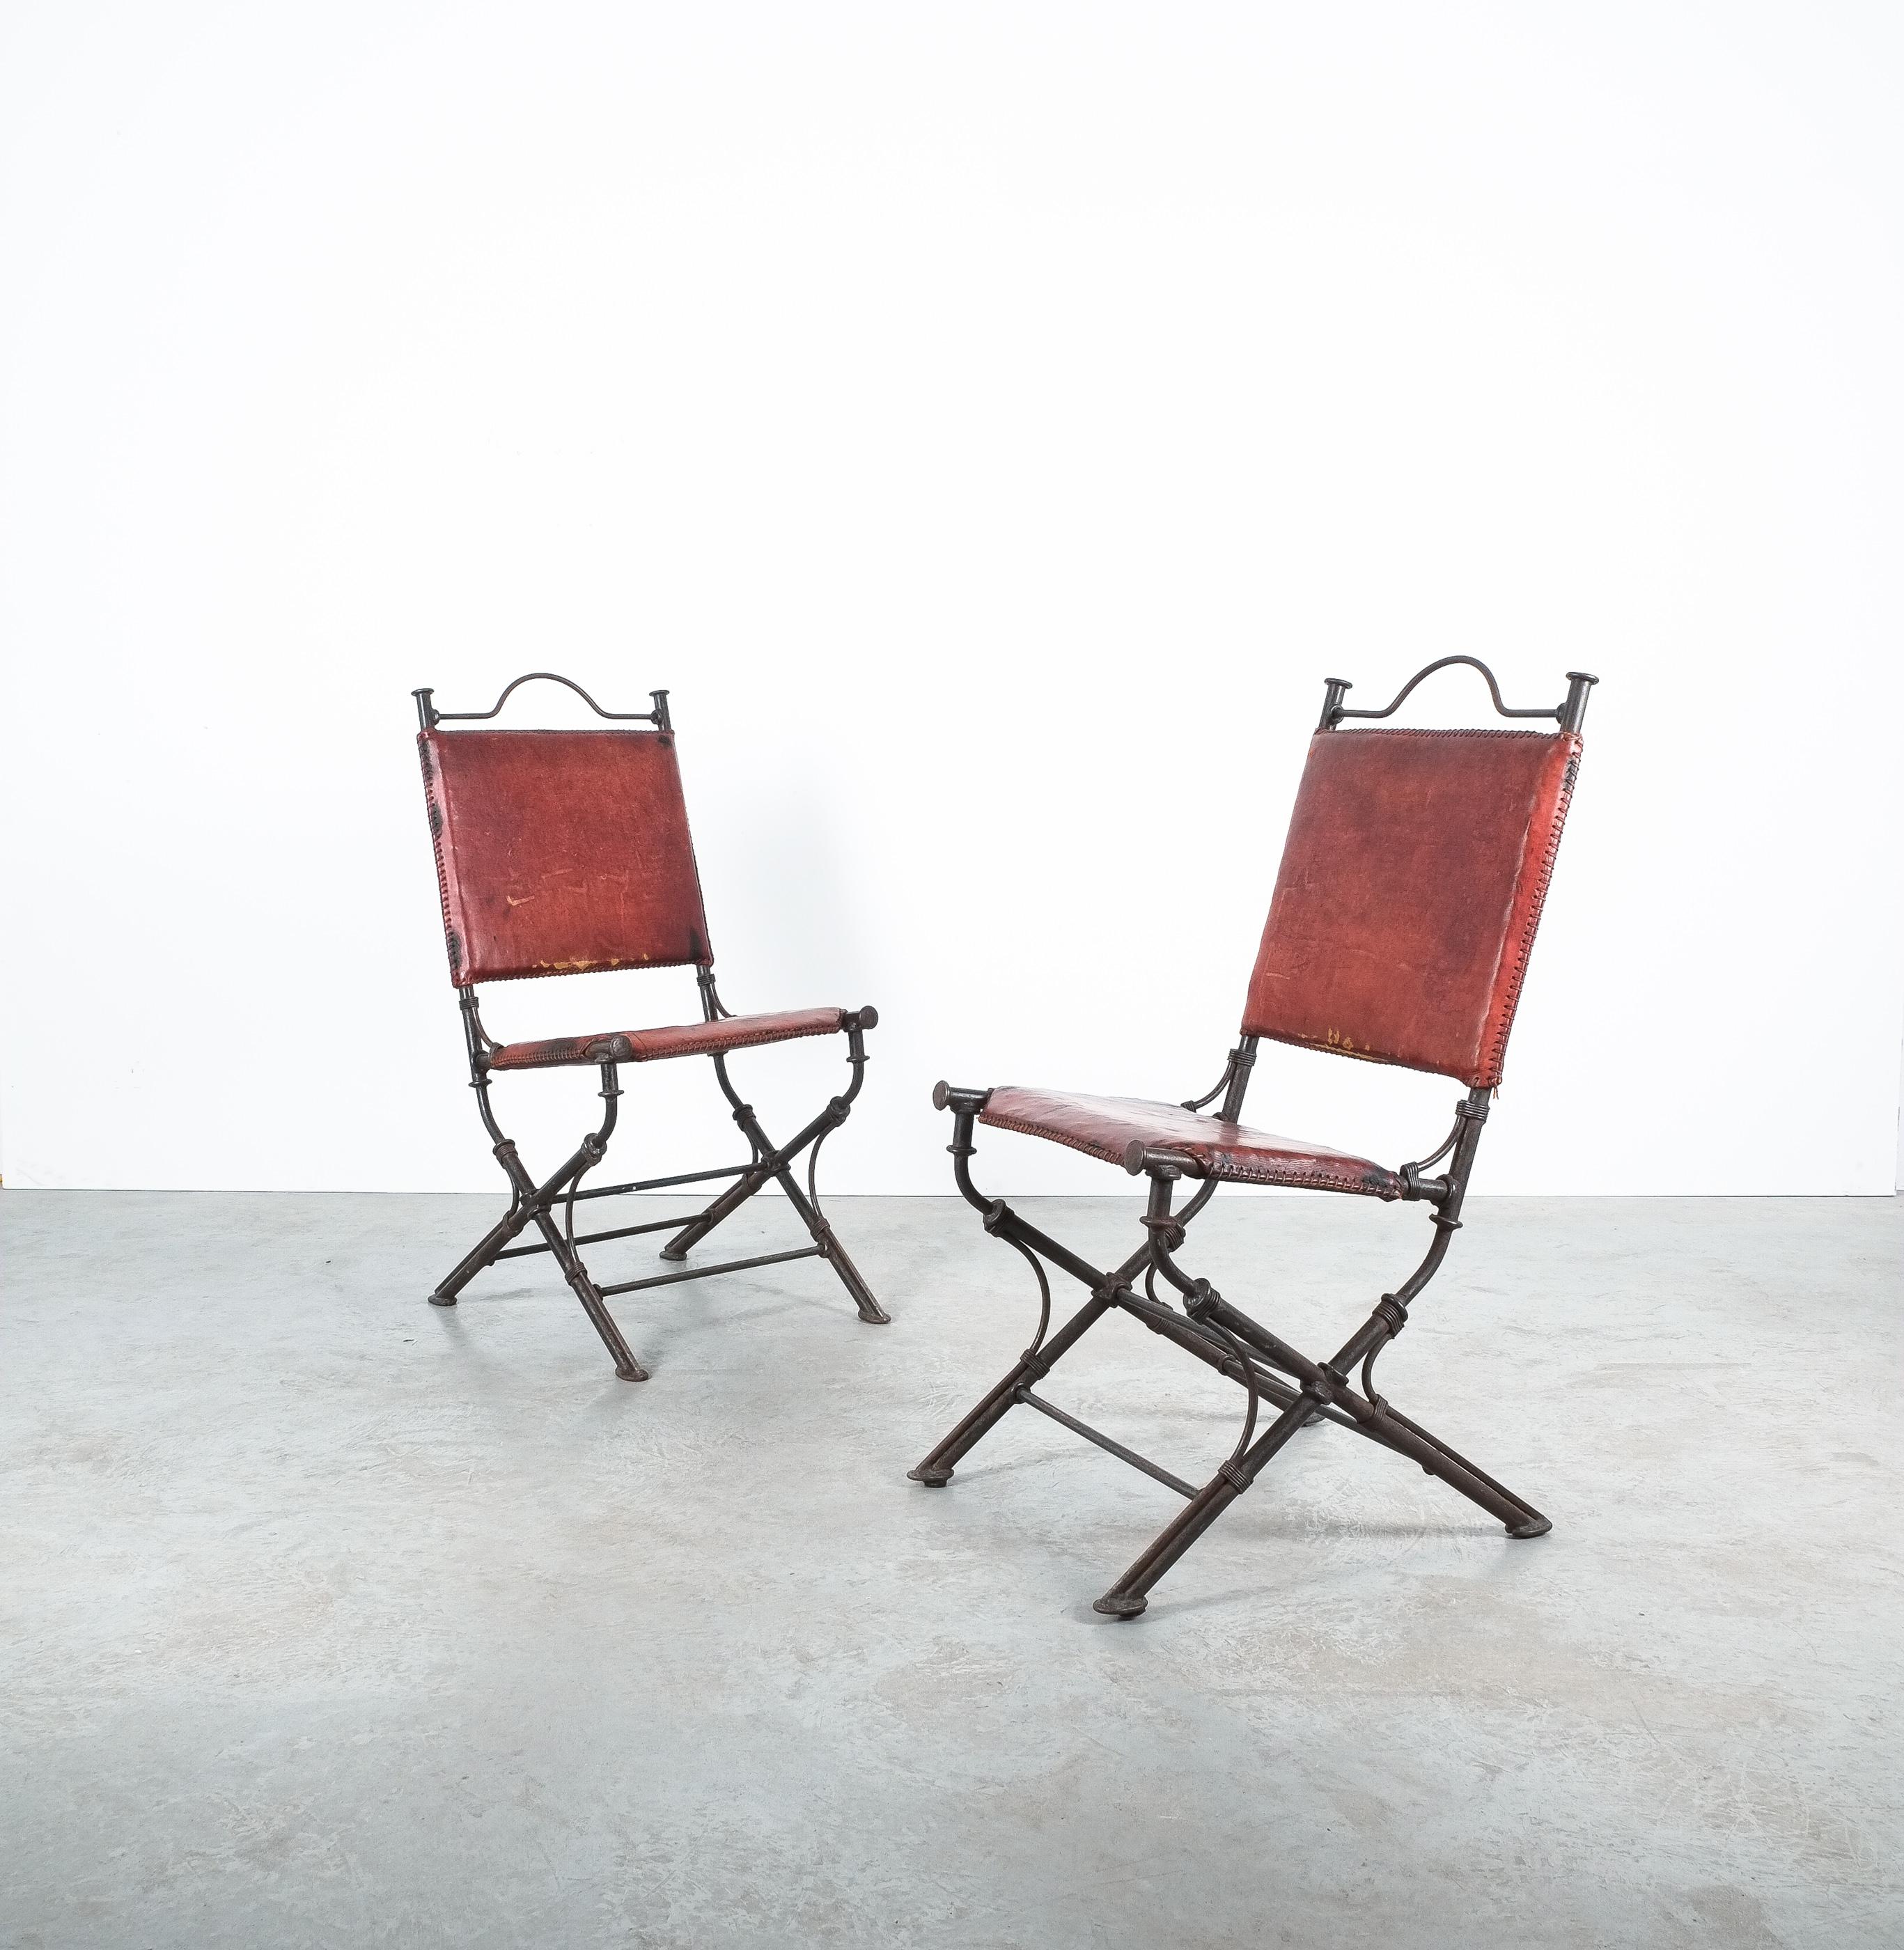 Chaises de jardin en cuir en fer forgé de style Ilana Goor.

Belle paire de chaises en fer et en cuir à la manière des chaises pliantes du 19e siècle. Il s'agit en fait d'une chaise robuste et lourde de 12,5 kg, fabriquée avec soin. Cuir épais de